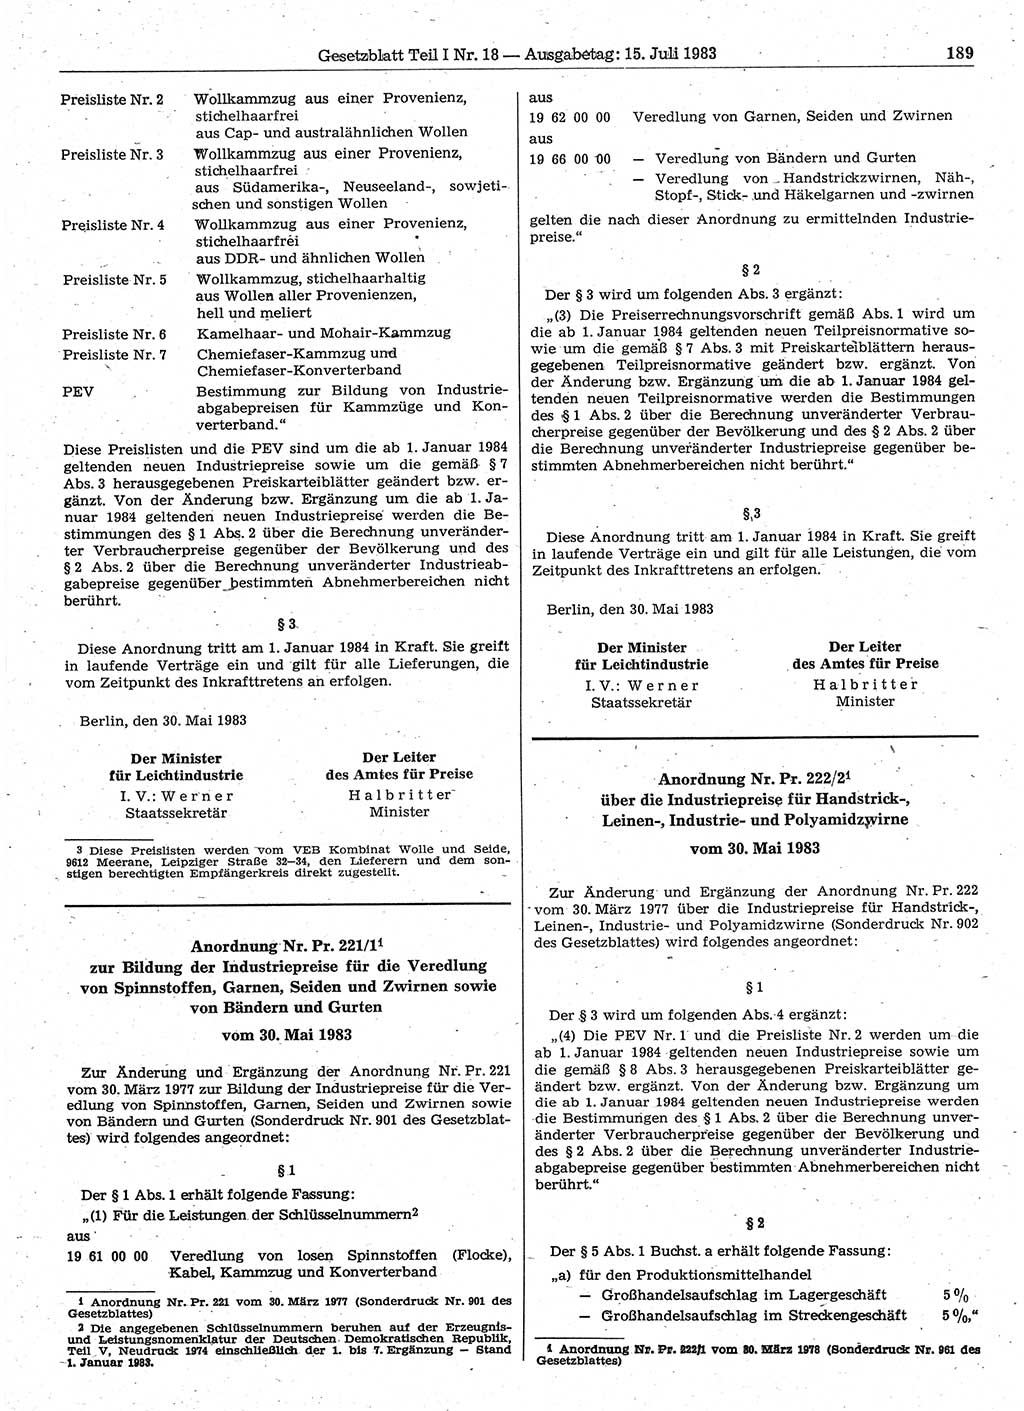 Gesetzblatt (GBl.) der Deutschen Demokratischen Republik (DDR) Teil Ⅰ 1983, Seite 189 (GBl. DDR Ⅰ 1983, S. 189)